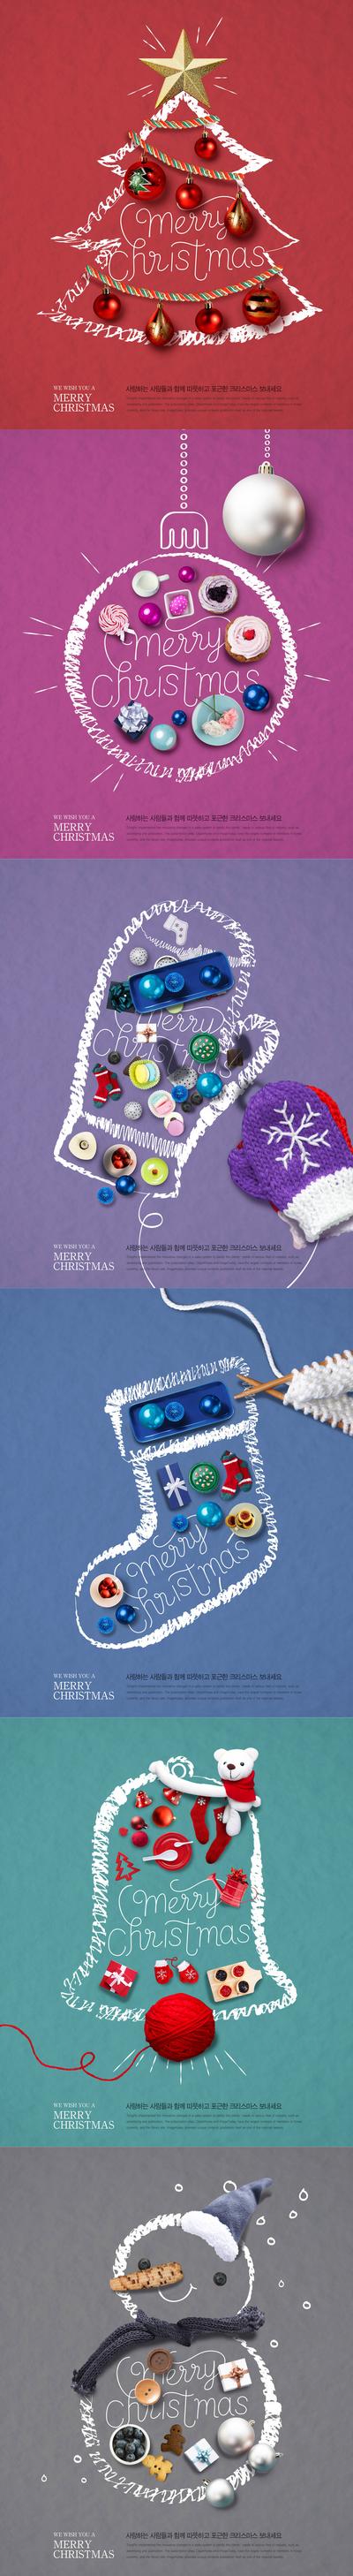 南门网 海报 圣诞节 公历节日 西方节日 创意 手绘 简约 圣诞树 圣诞球 手套 袜子 铃铛 雪人